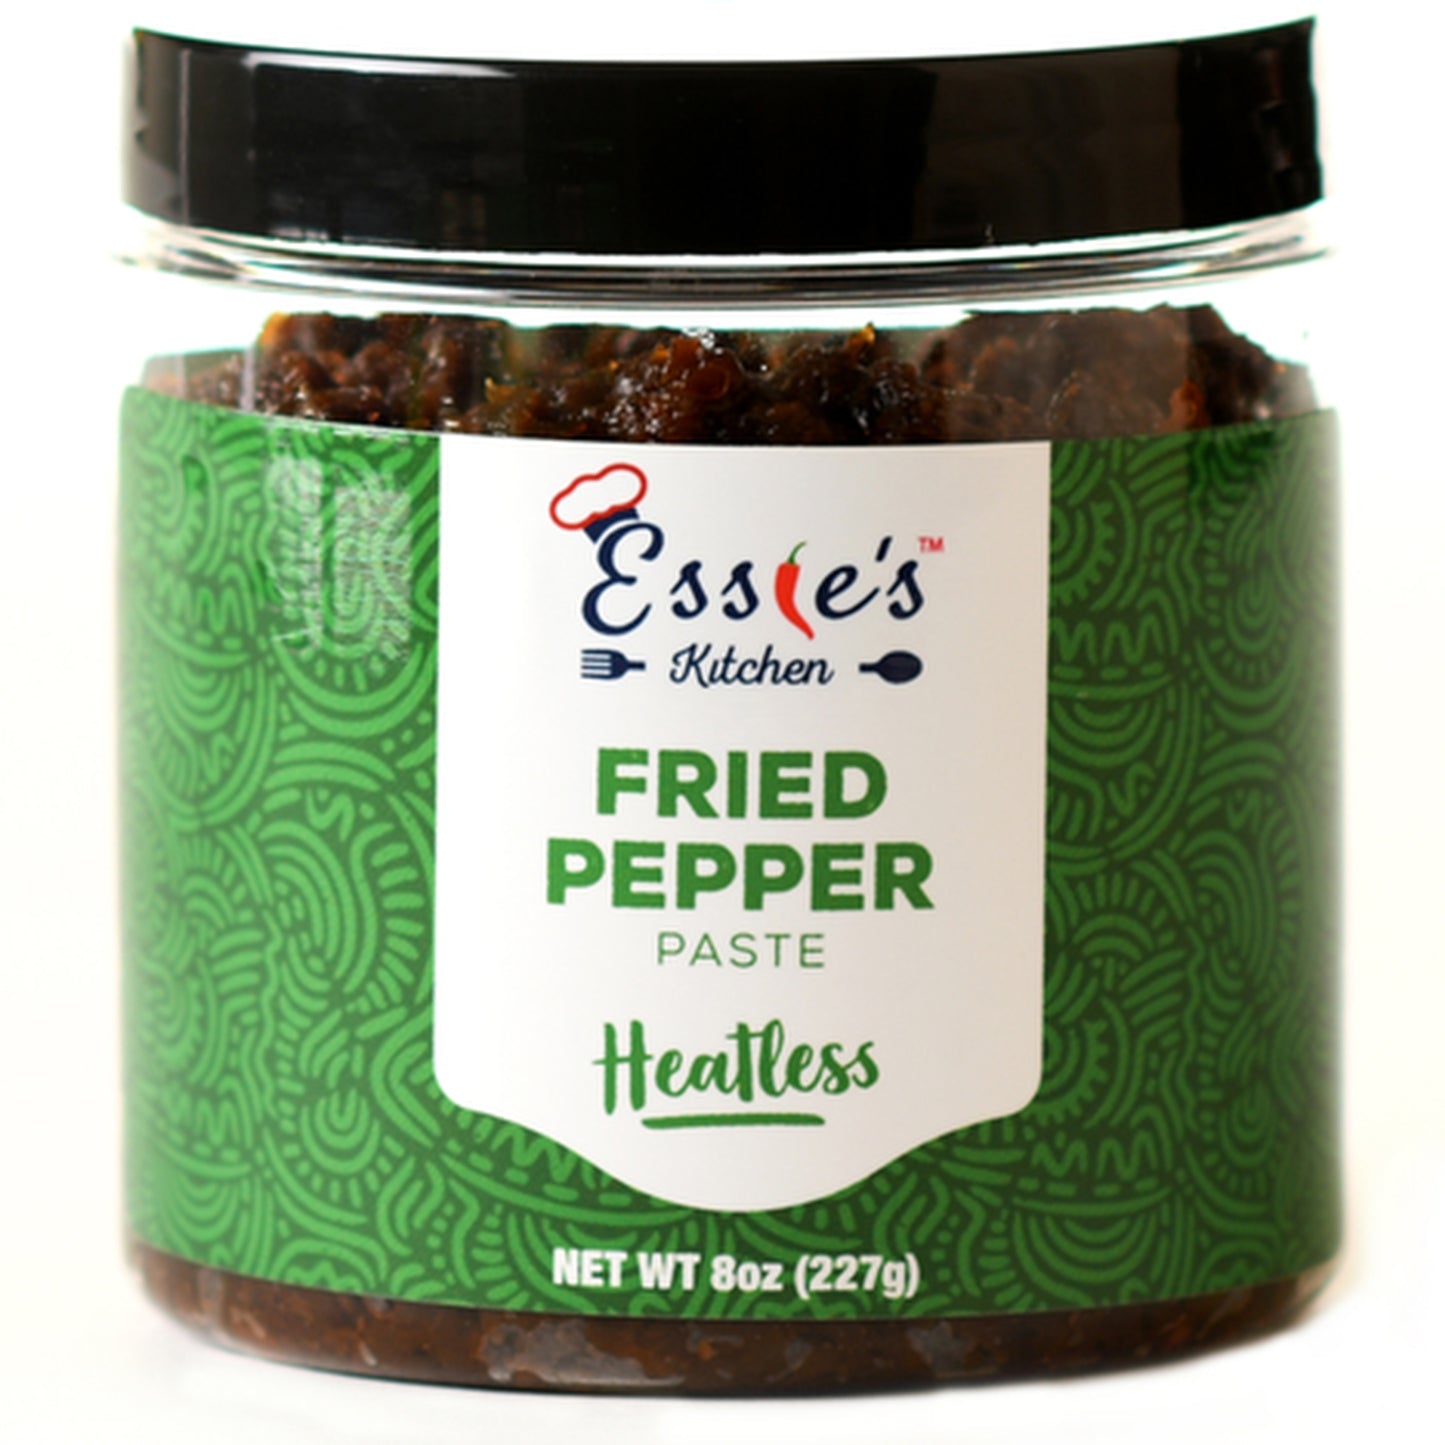 Fried Pepper Paste ~ Heatless